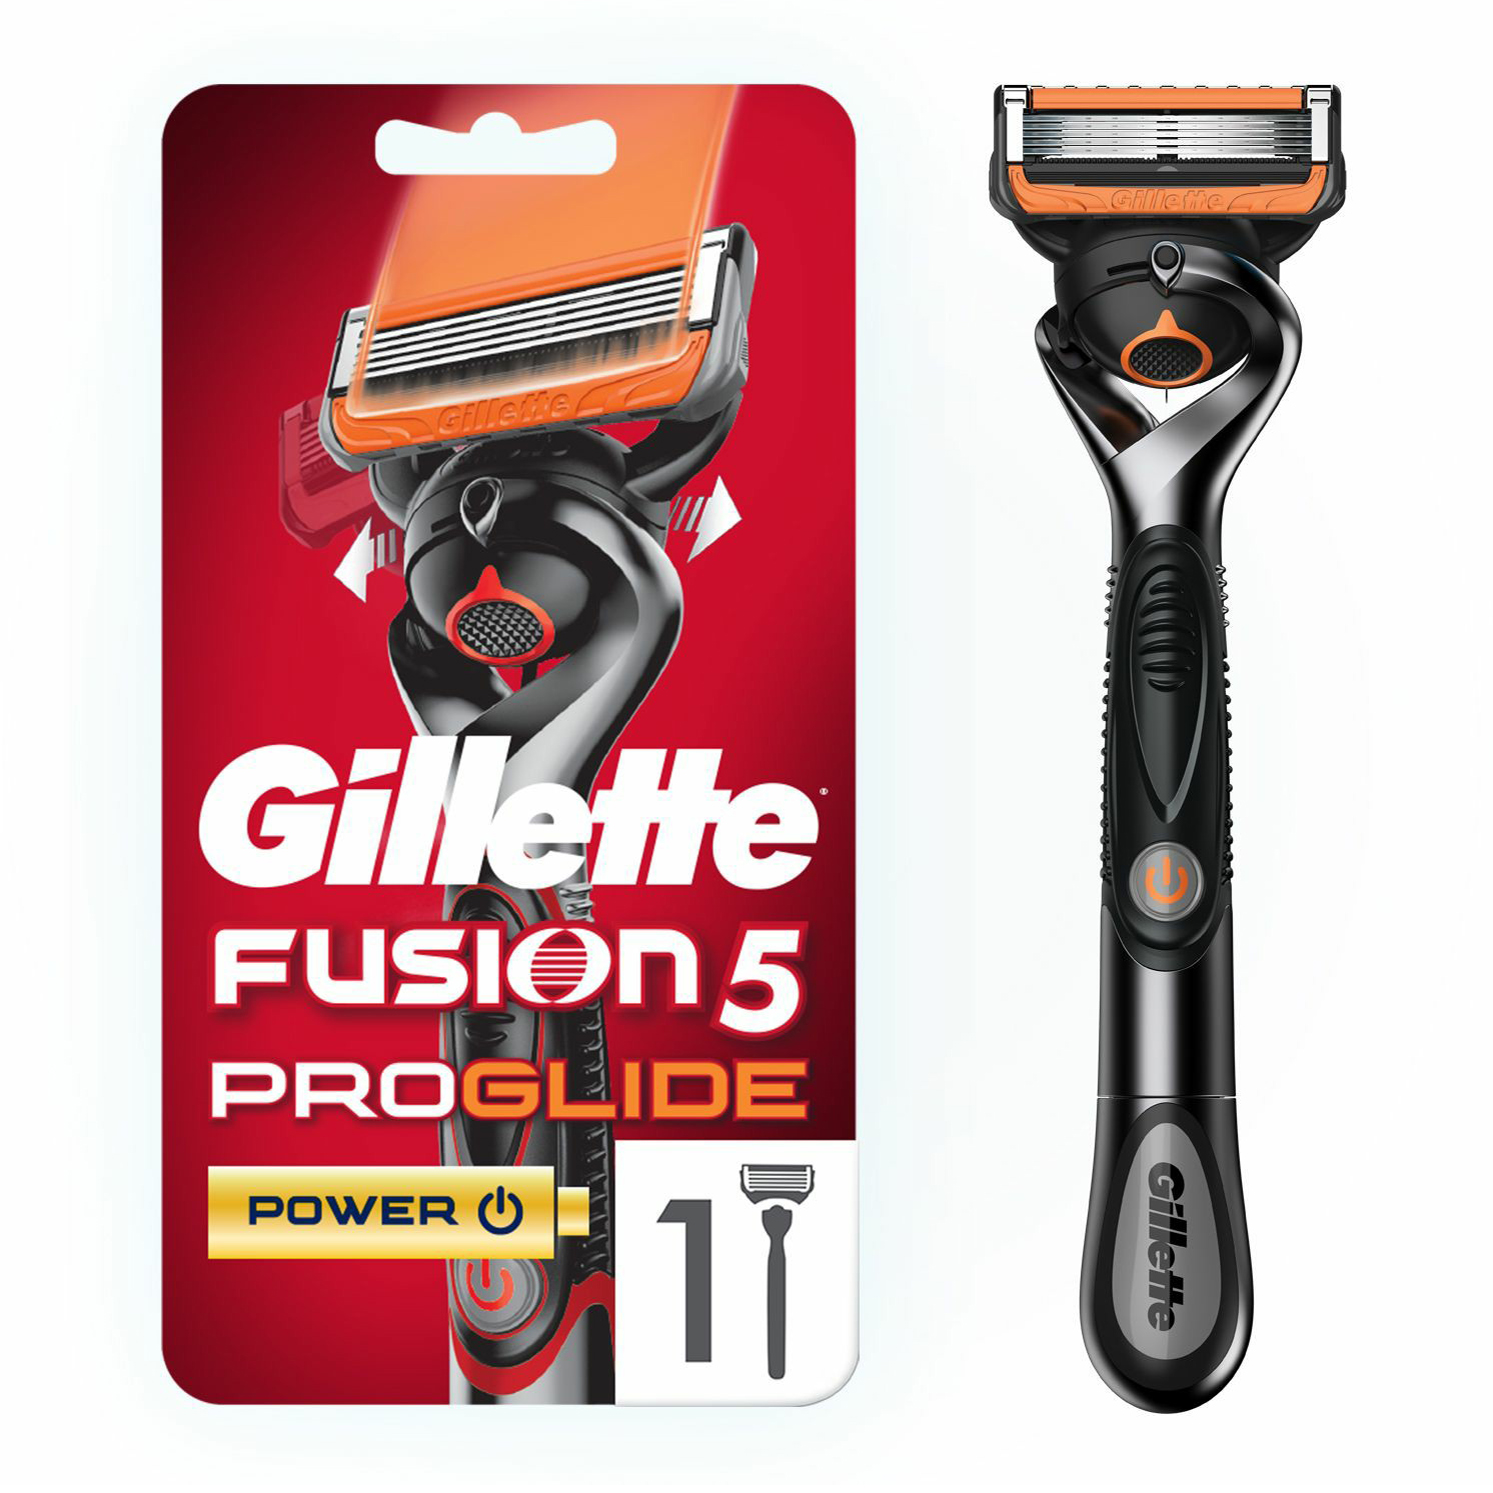 Бритвенный станок со сменной кассетой Gillette Fusion5 ProGlide Power с пятью лезвиями 1шт станок для бритья deonica 3 лезвия со сменной кассетой и керамическим покрытием бритва жен